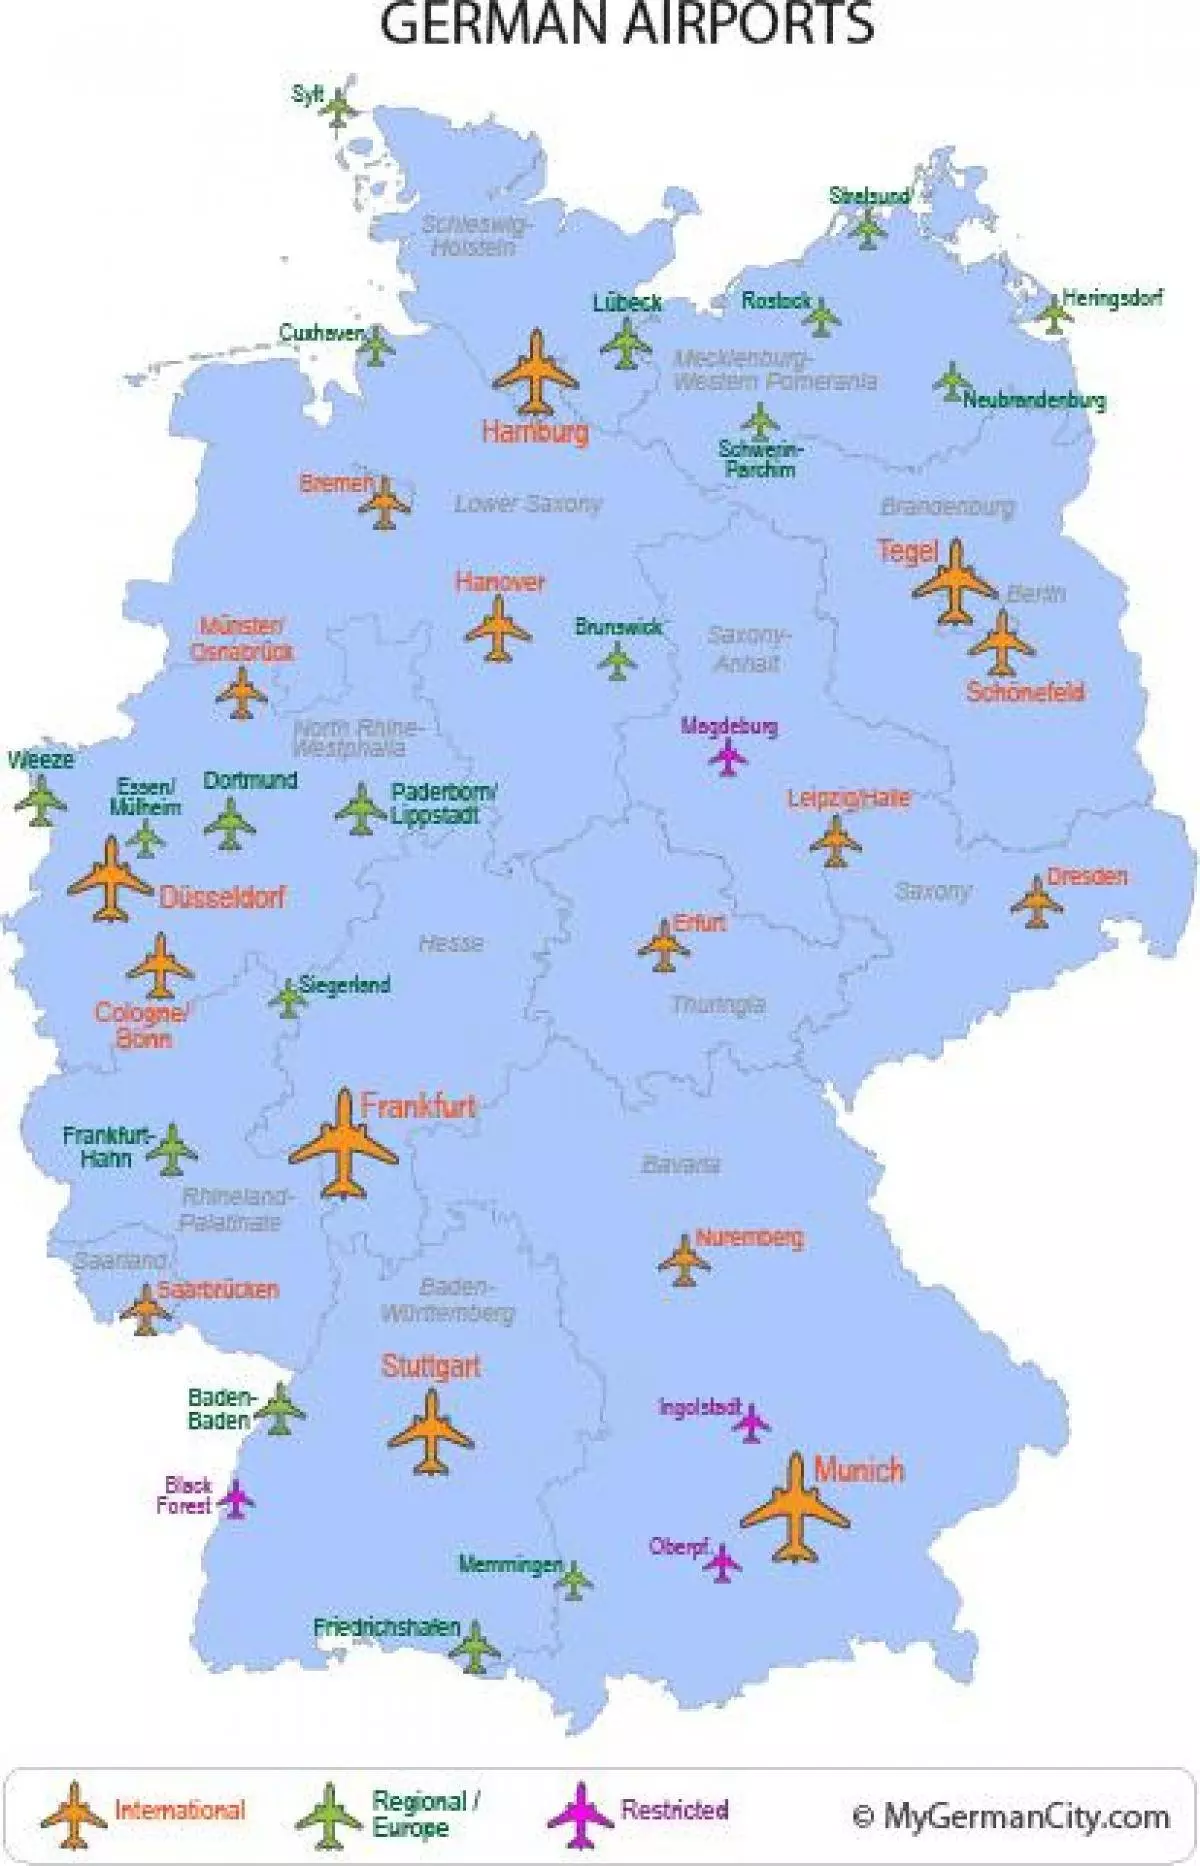 Международные аэропорты германии на карте: полный список, названия аэропортов